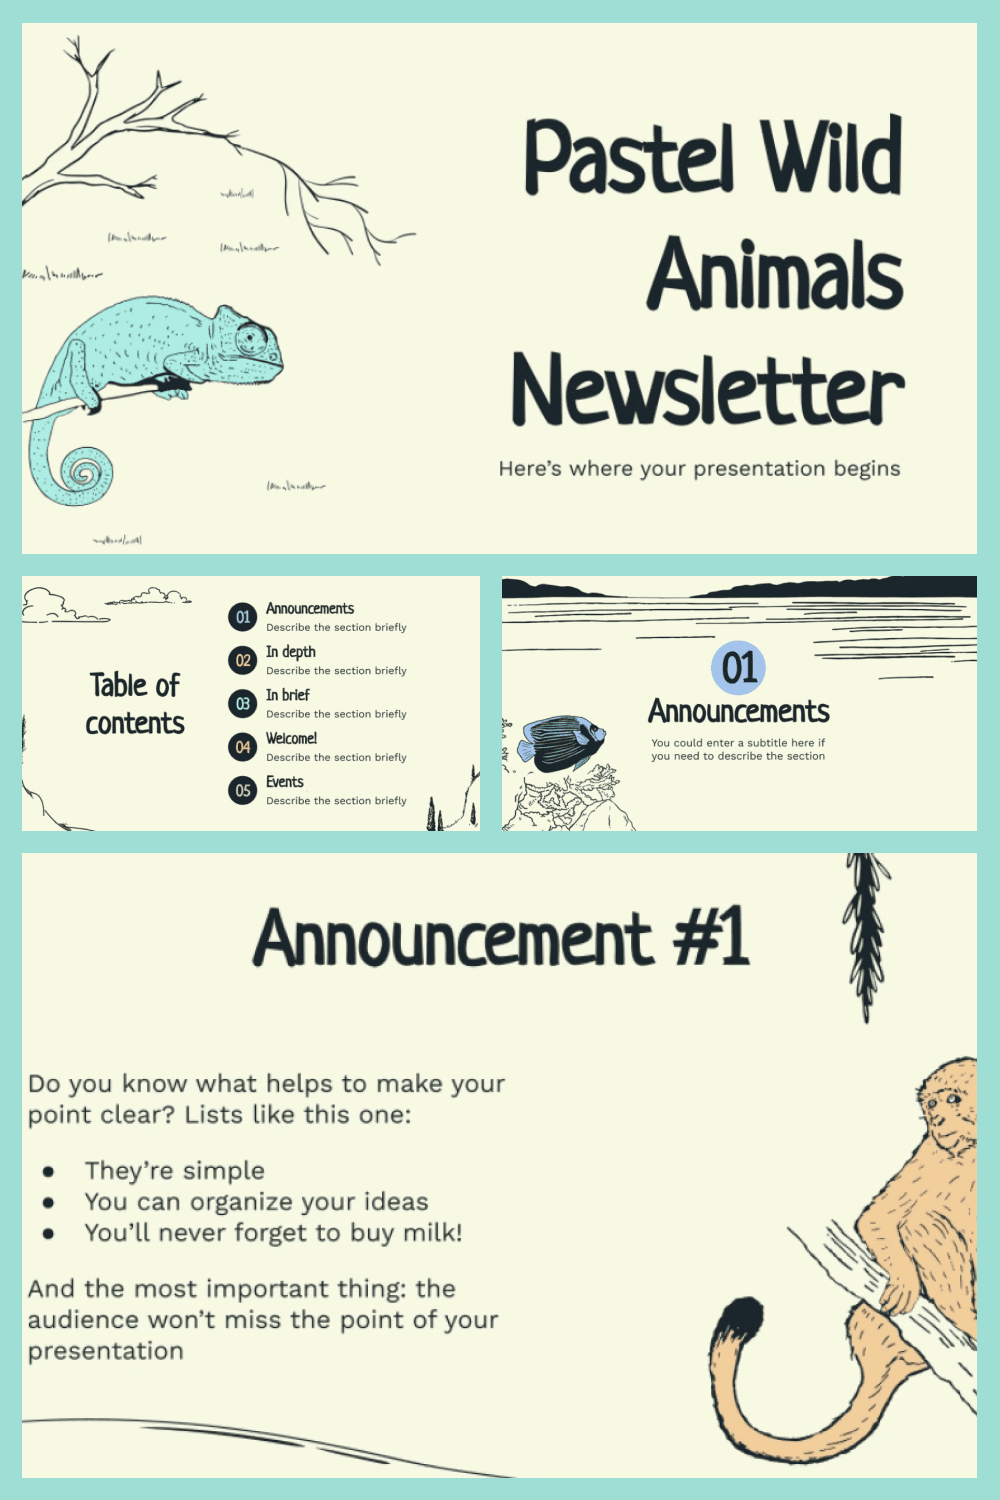 Pastel wild animals newsletter.